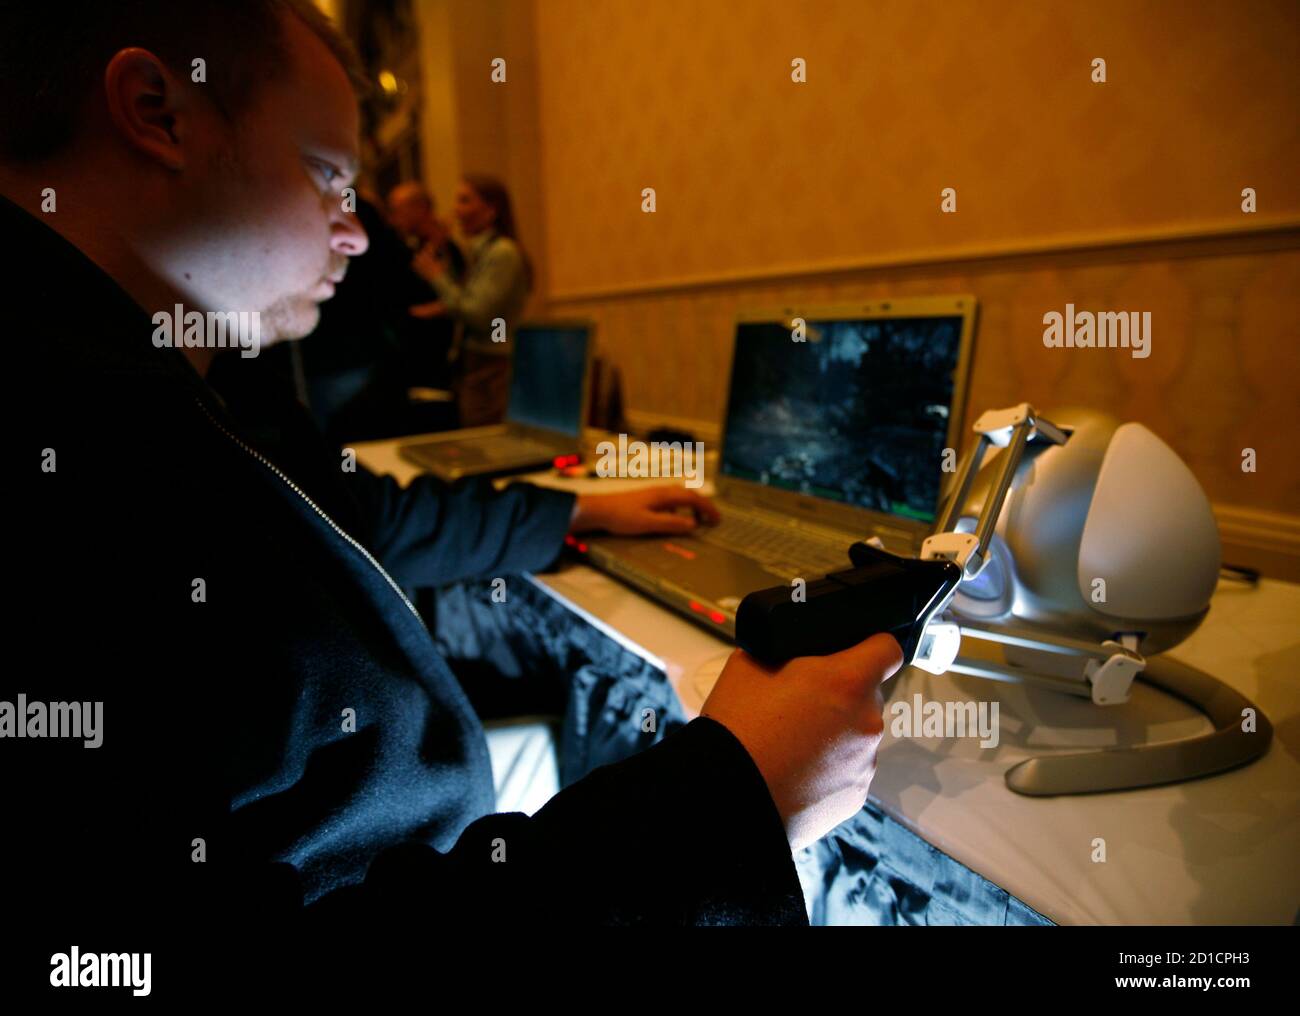 Nathan Kirsch prova il dispositivo touch 3D Novint Technologies Falcon, che ha la forma di una pistola, mentre gioca a "Left 4 Dead" durante l'apertura dell'annuale Consumer Electronics Show a Las Vegas, Nevada, 6 gennaio 2009. REUTERS/Rick Wilking (STATI UNITI) Foto Stock